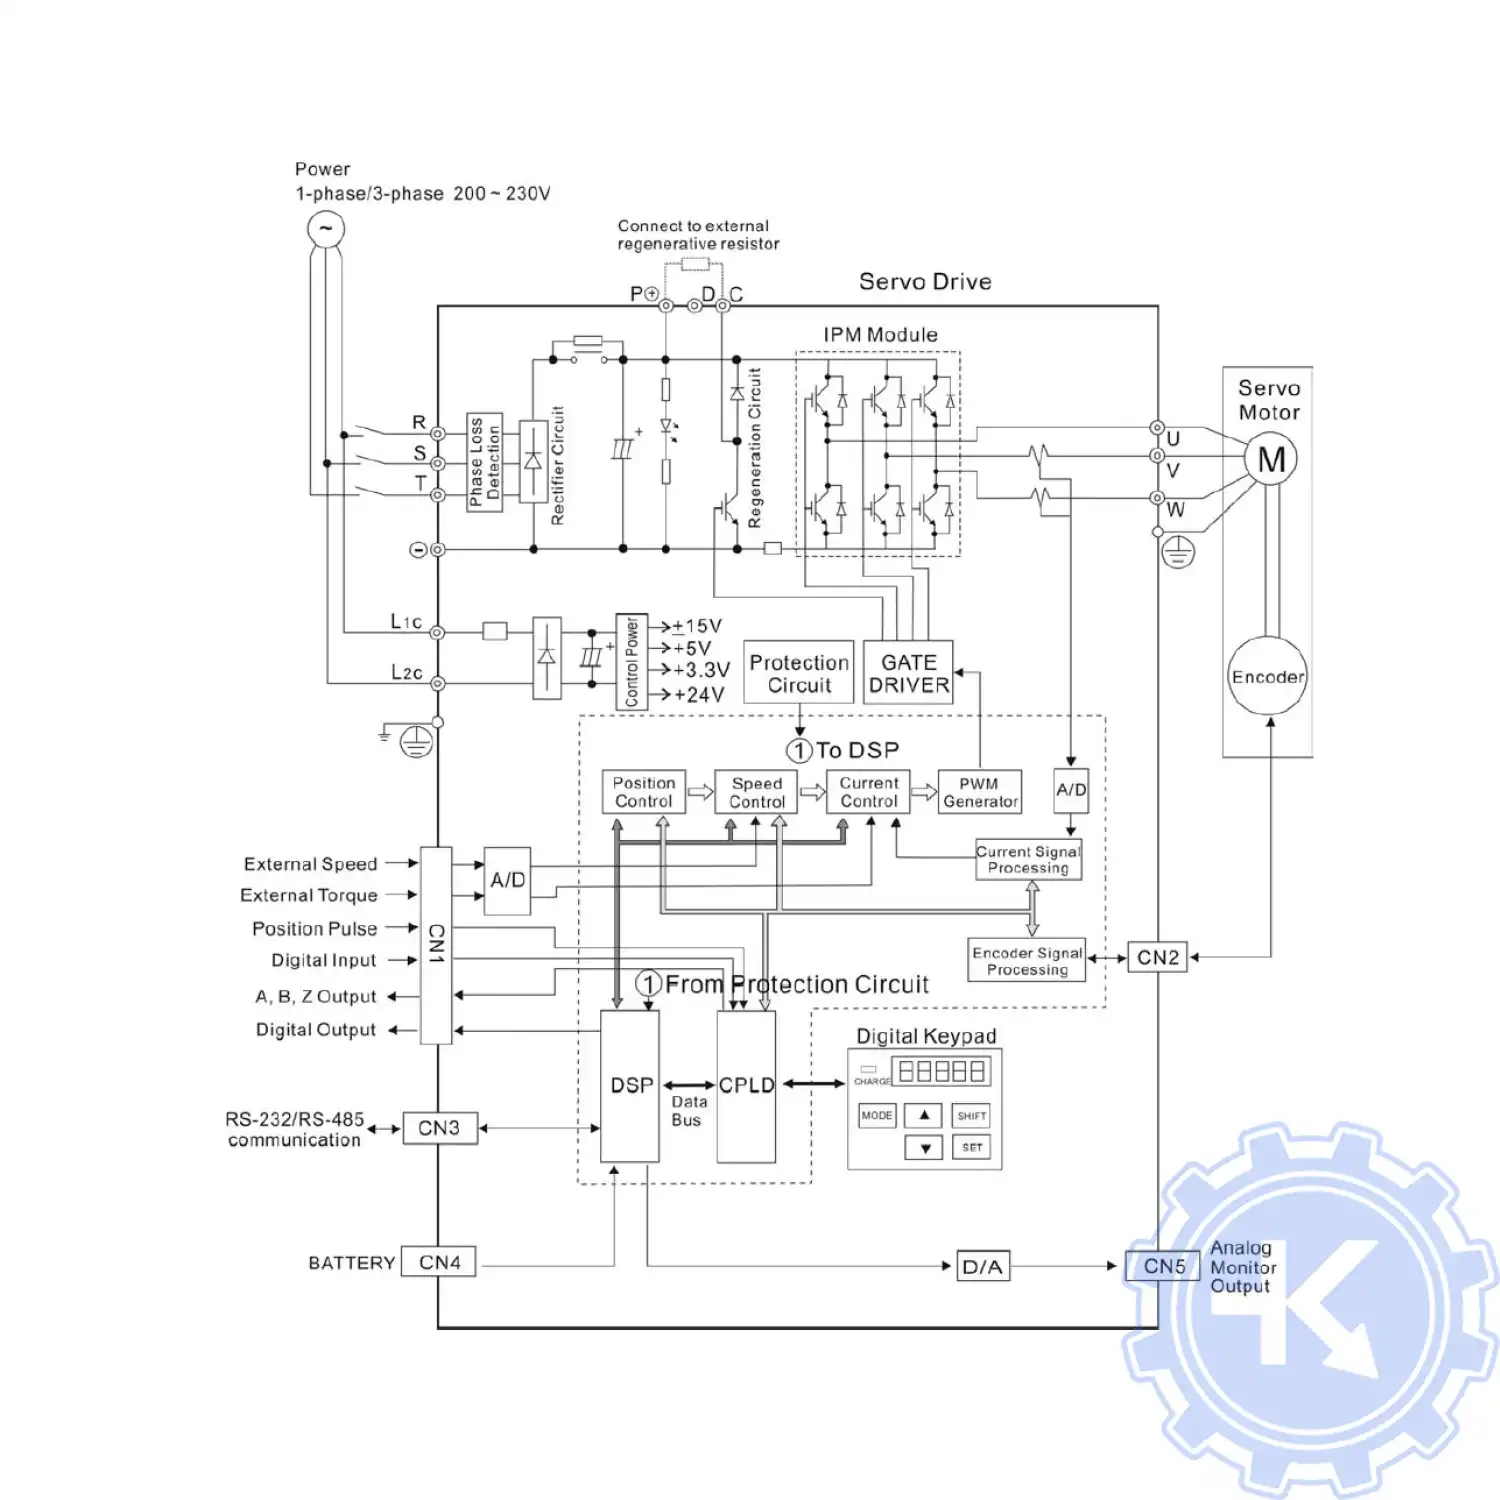 Базовая схема соединений для моделей мощностью 400Вт и ниже (без встроенного тормозного резистора и без вентилятора)